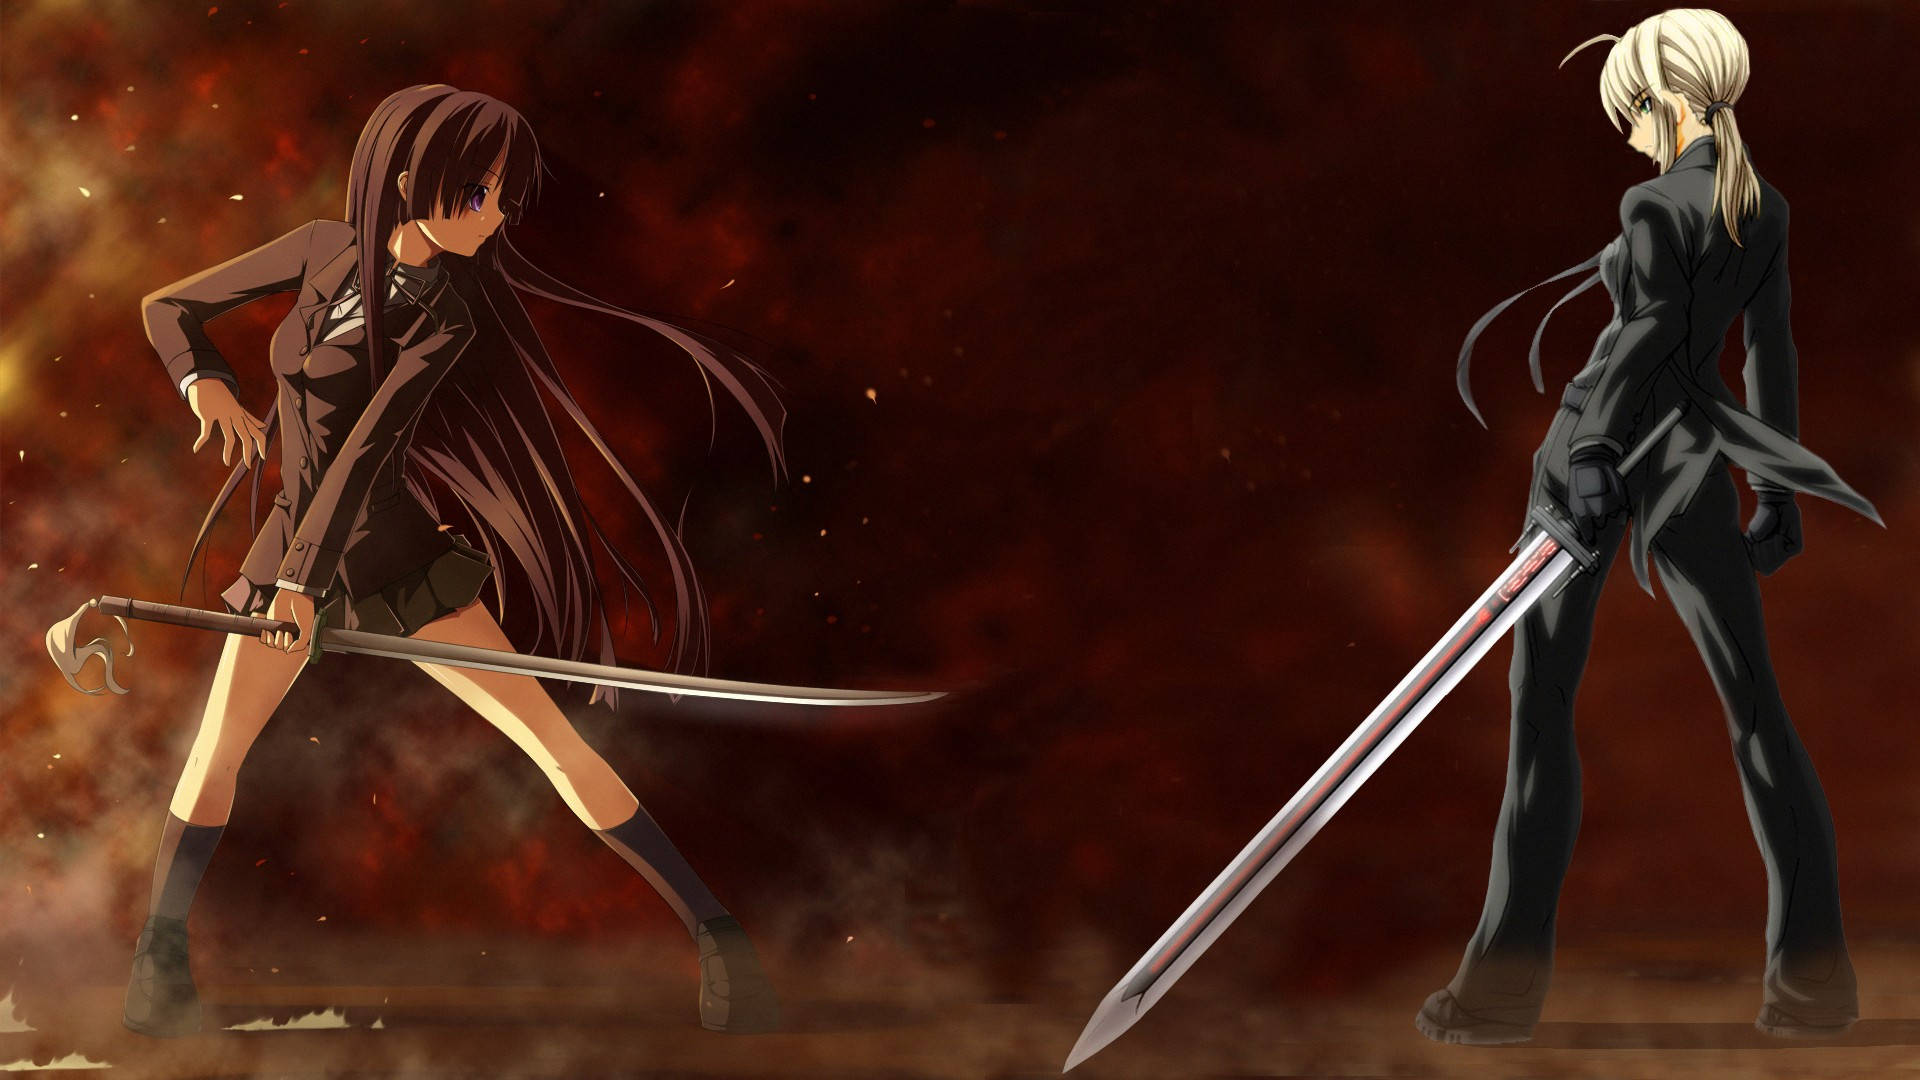 "The Epic Battle of Fate Zero" Wallpaper